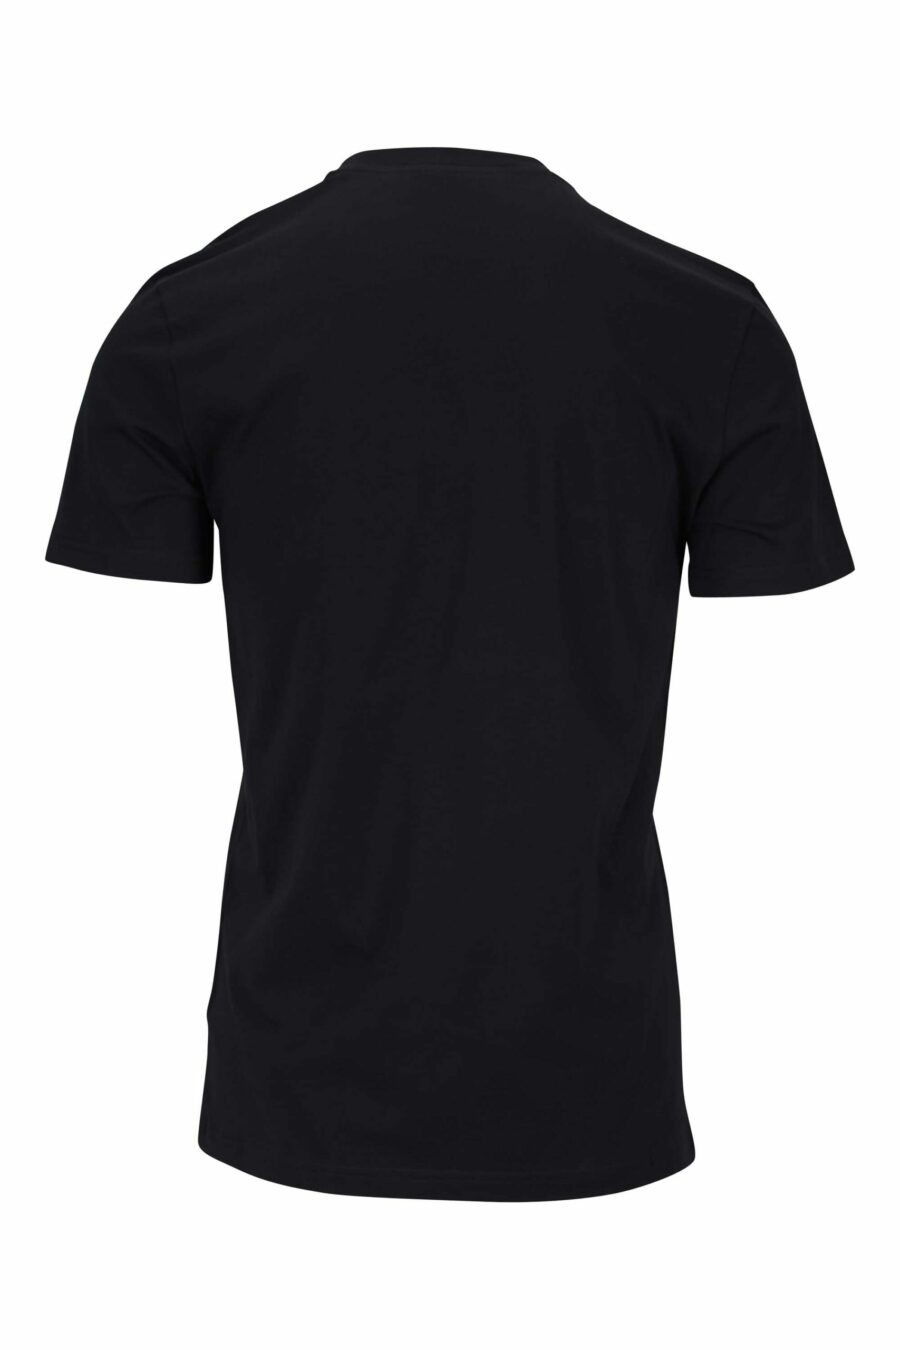 Camiseta negra de algodón orgánico con maxilogo negro clásico - 667113391595 1 scaled